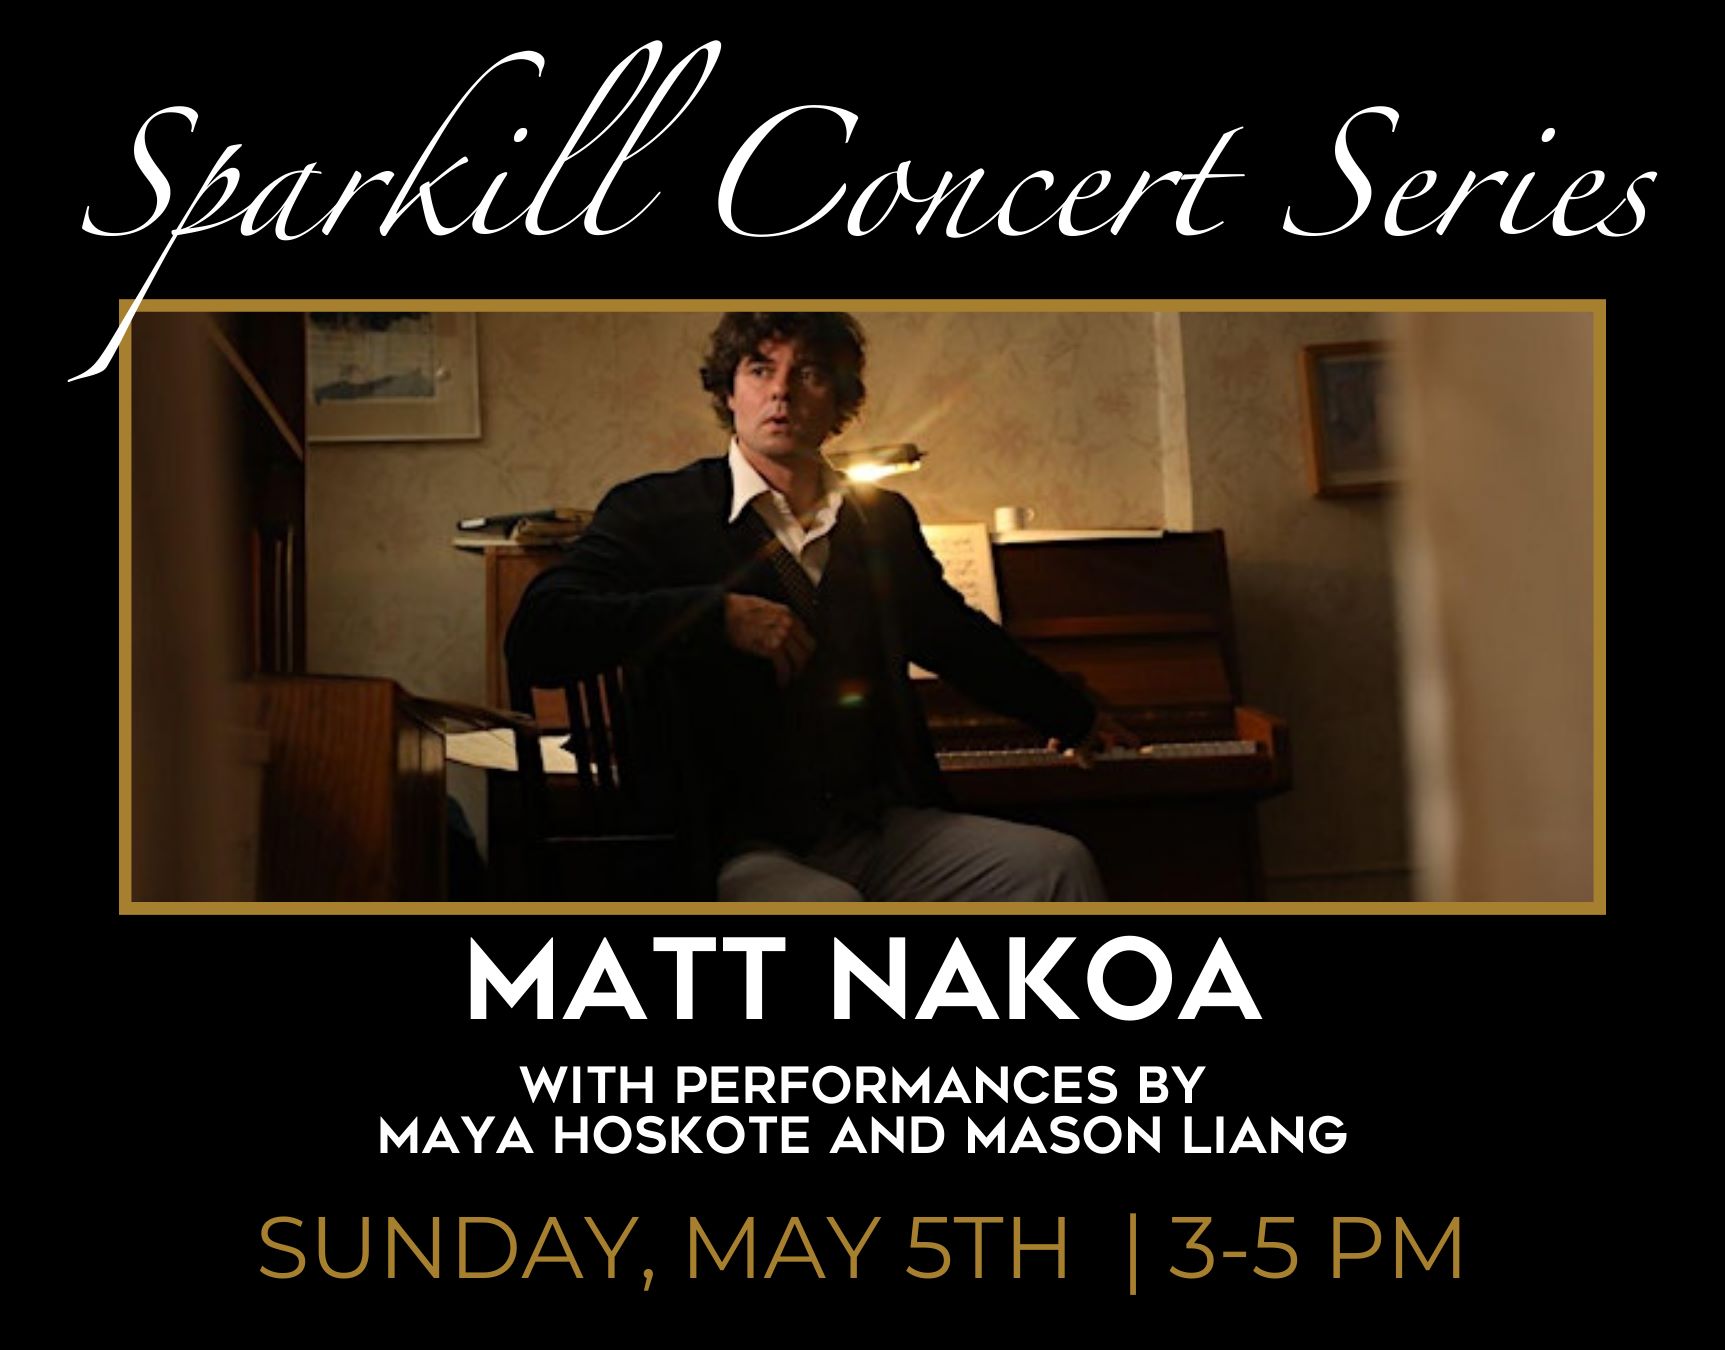 sparkill concert series matt nakoa with performances by maya hoskote and mason lang sunday may 5th 3-5pm